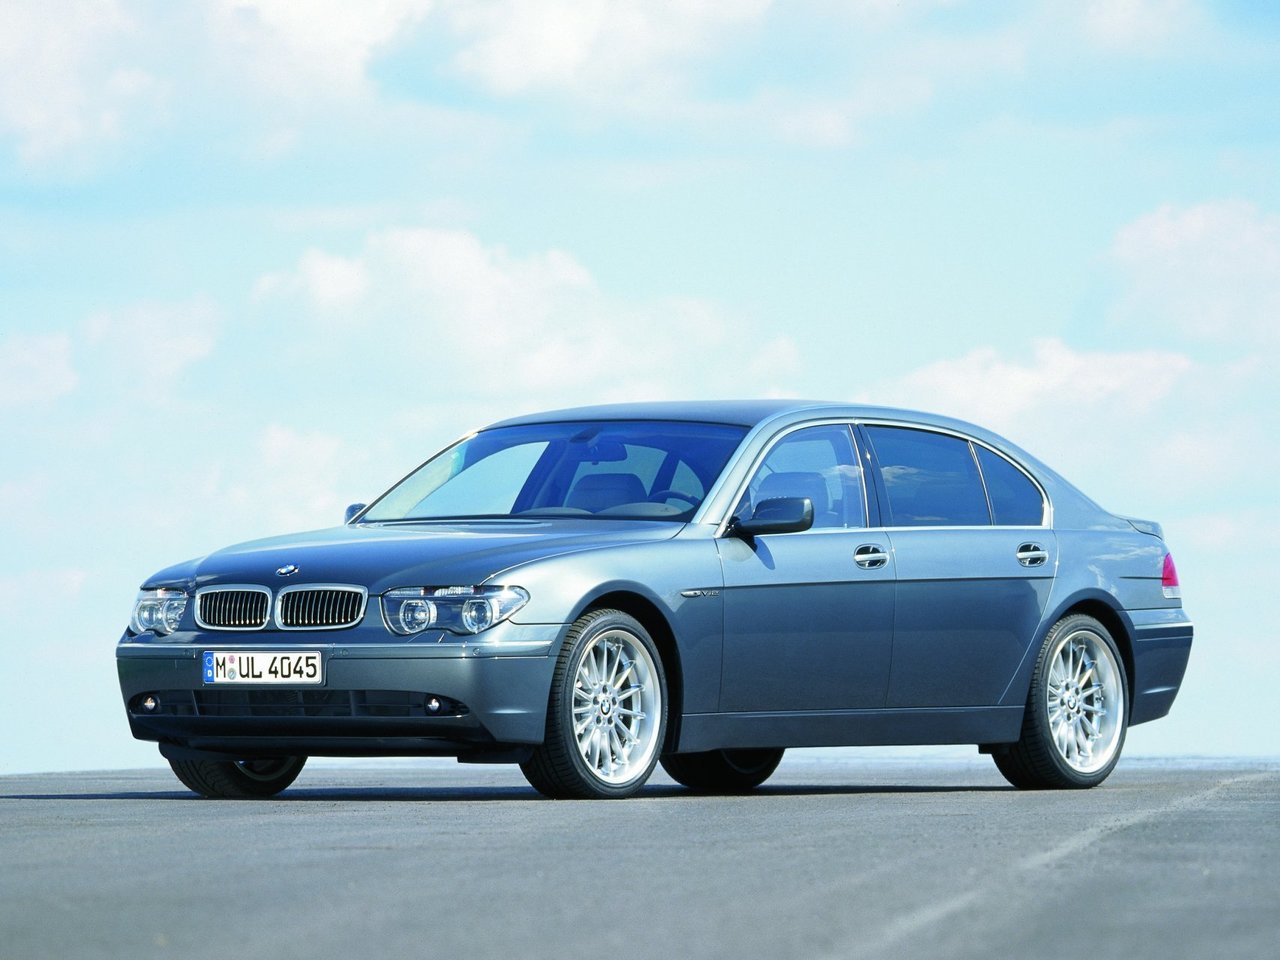 Расход газа четырёх комплектаций седан Long BMW 7 серия. Разница стоимости заправки газом и бензином. Автономный пробег до и после установки ГБО.